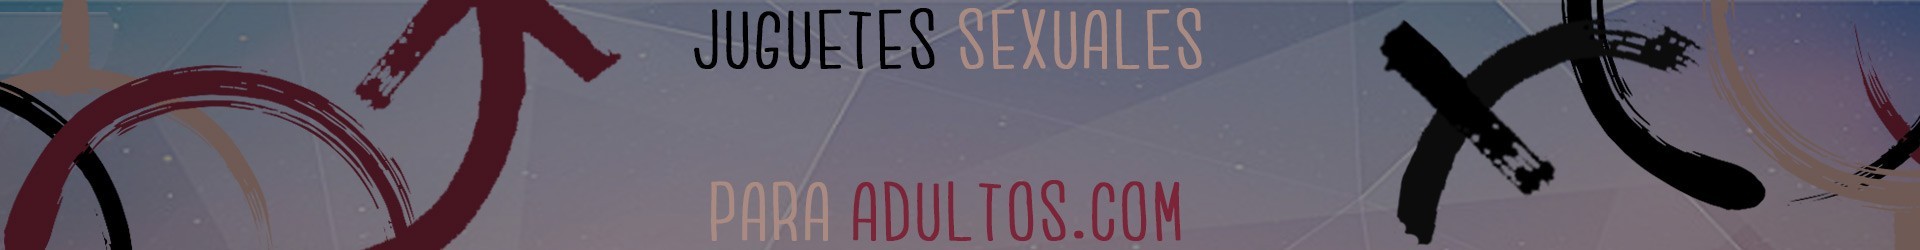 Penes realisticos - Sex Shop Juguetes Sexuales